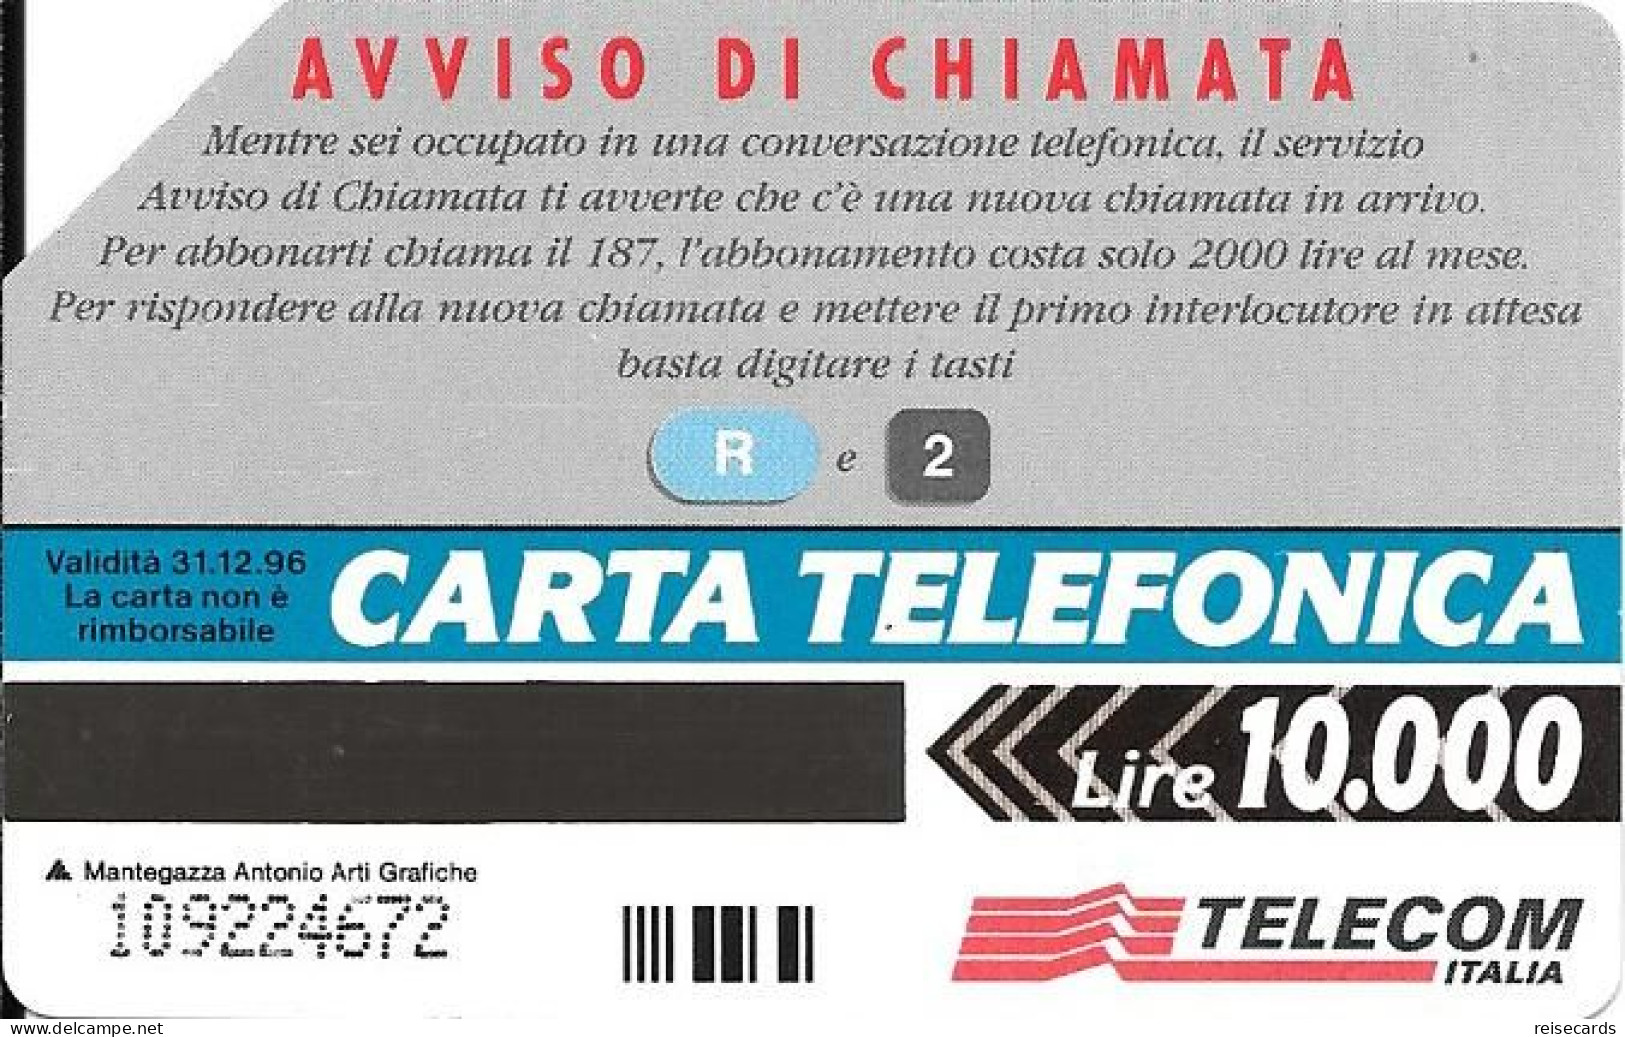 Italy: Telecom Italia - R2 Aviso Di Chiamata - Openbare Reclame